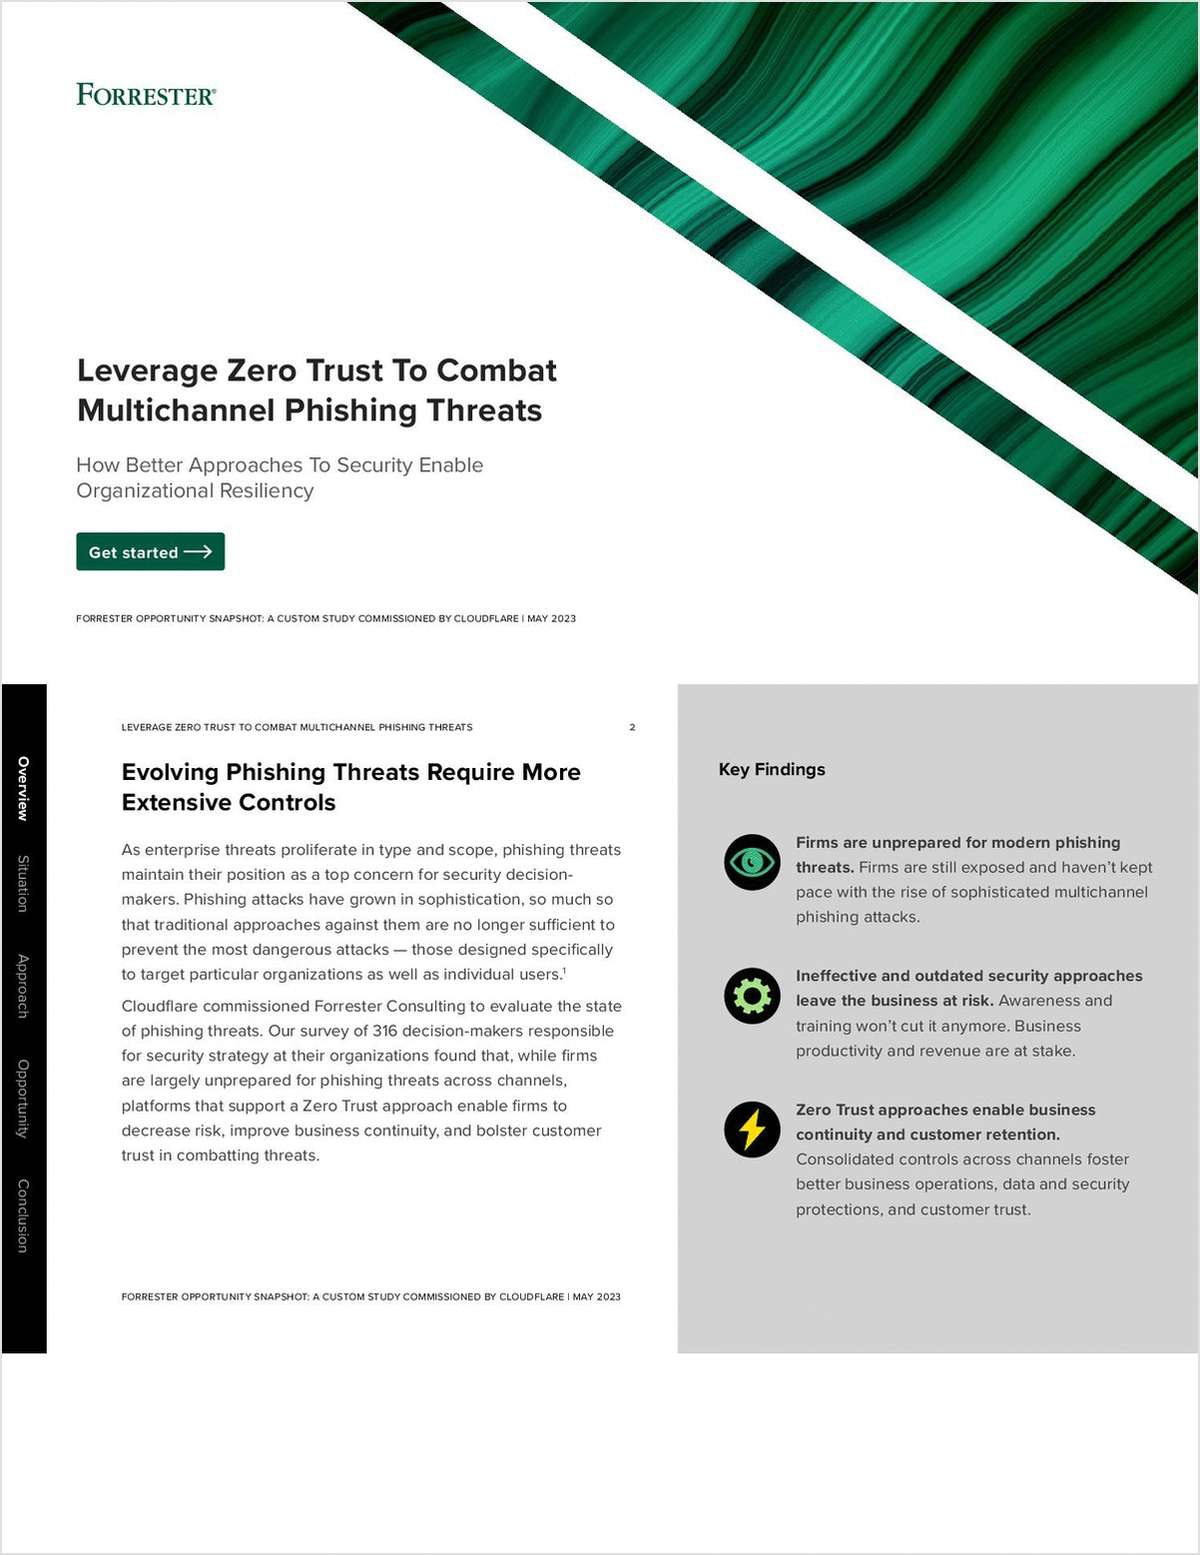 Forrester Snapshot: Leverage Zero Trust to Combat Multichannel Phishing Threats